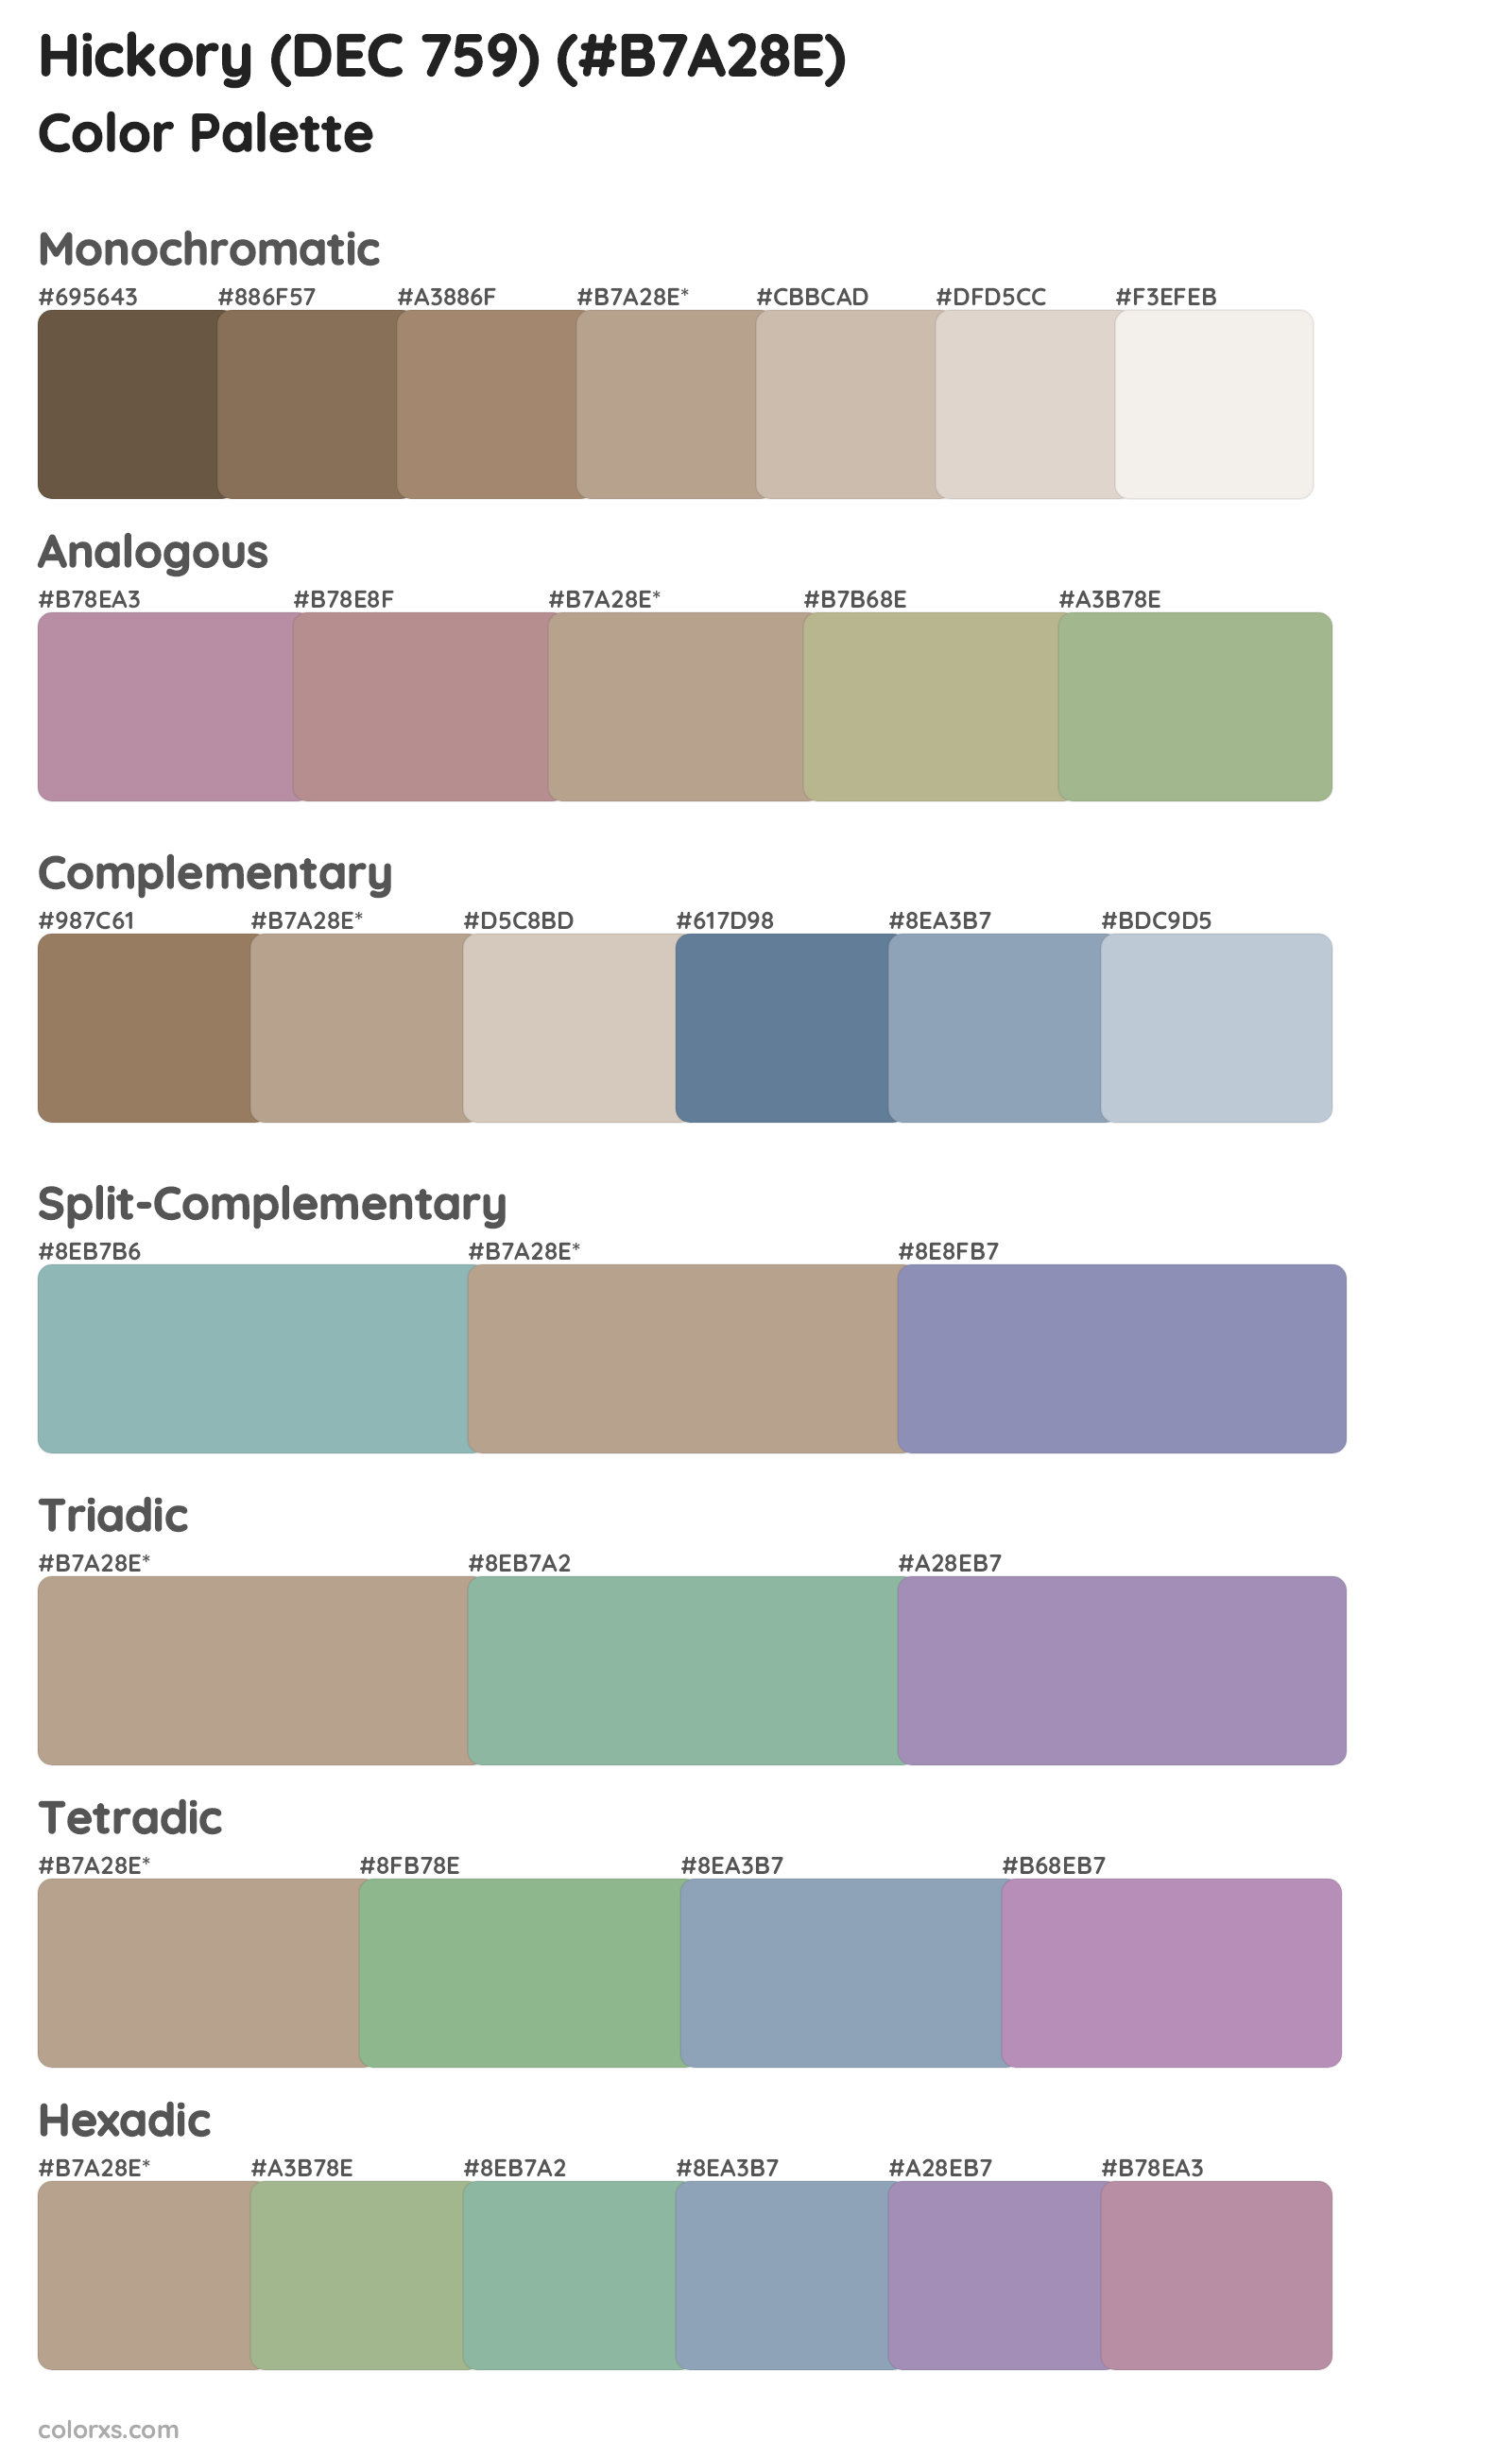 Hickory (DEC 759) Color Scheme Palettes